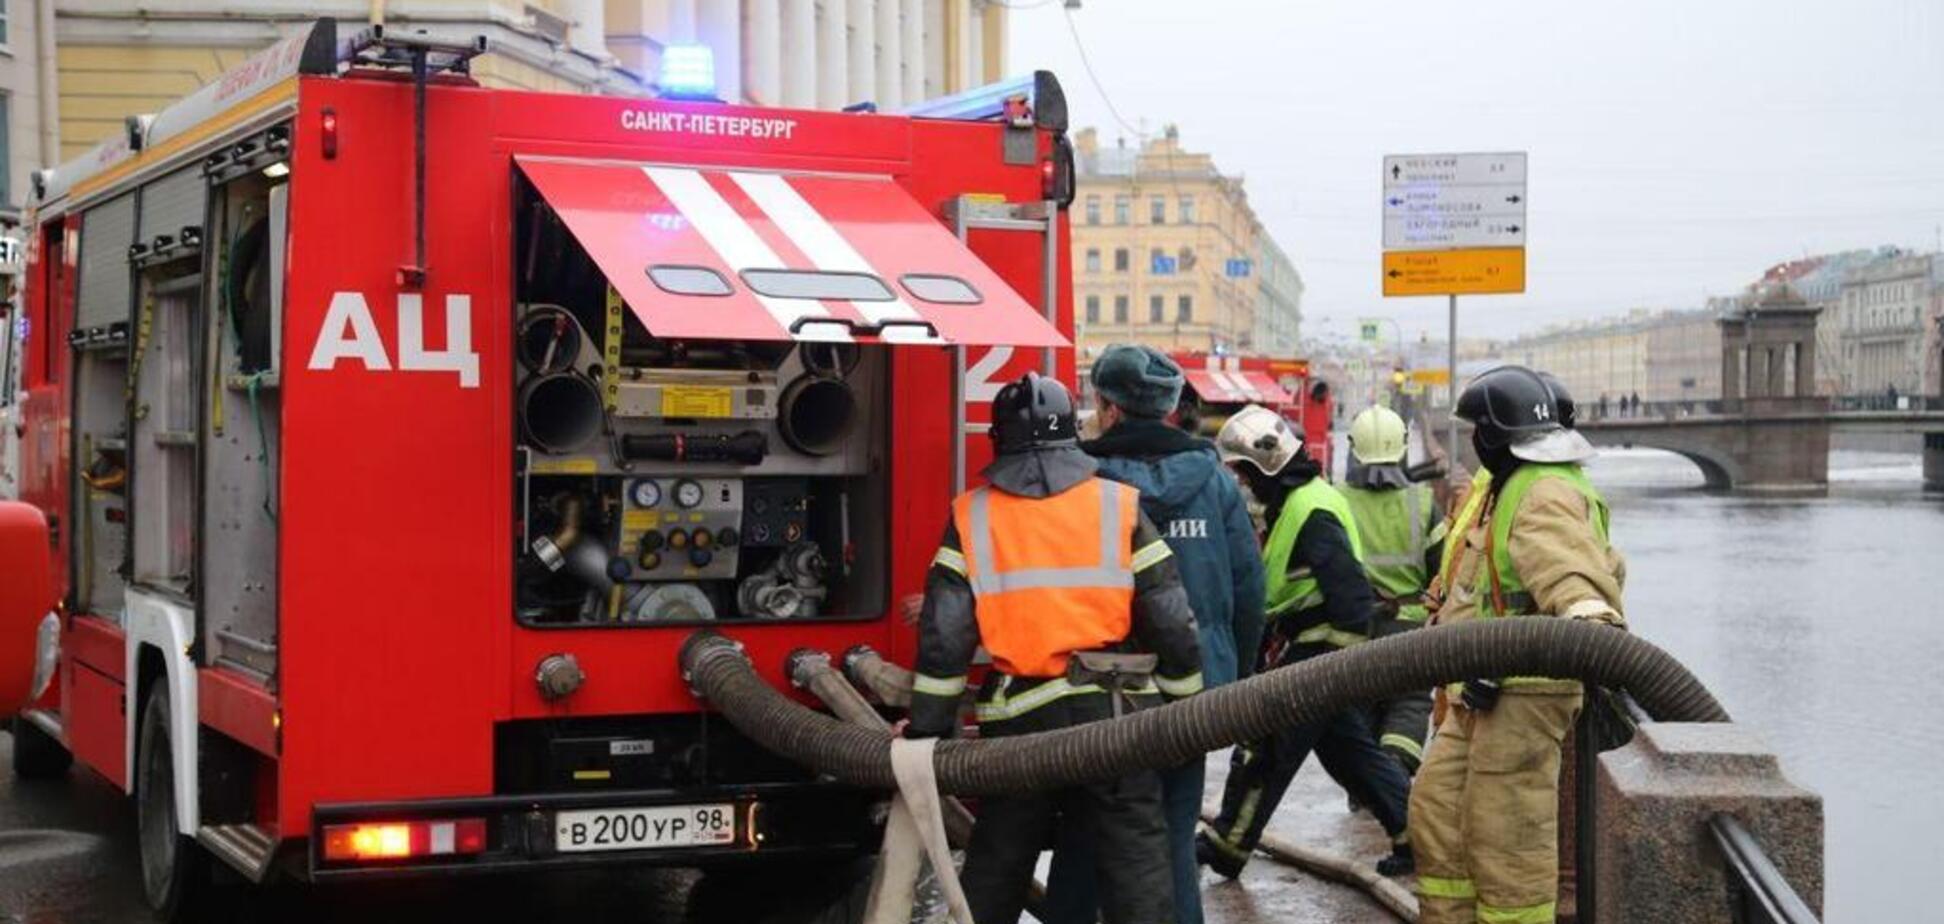 'Люди з вікон кричать про допомогу': в Росії загорівся бізнес-центр. Фото й відео